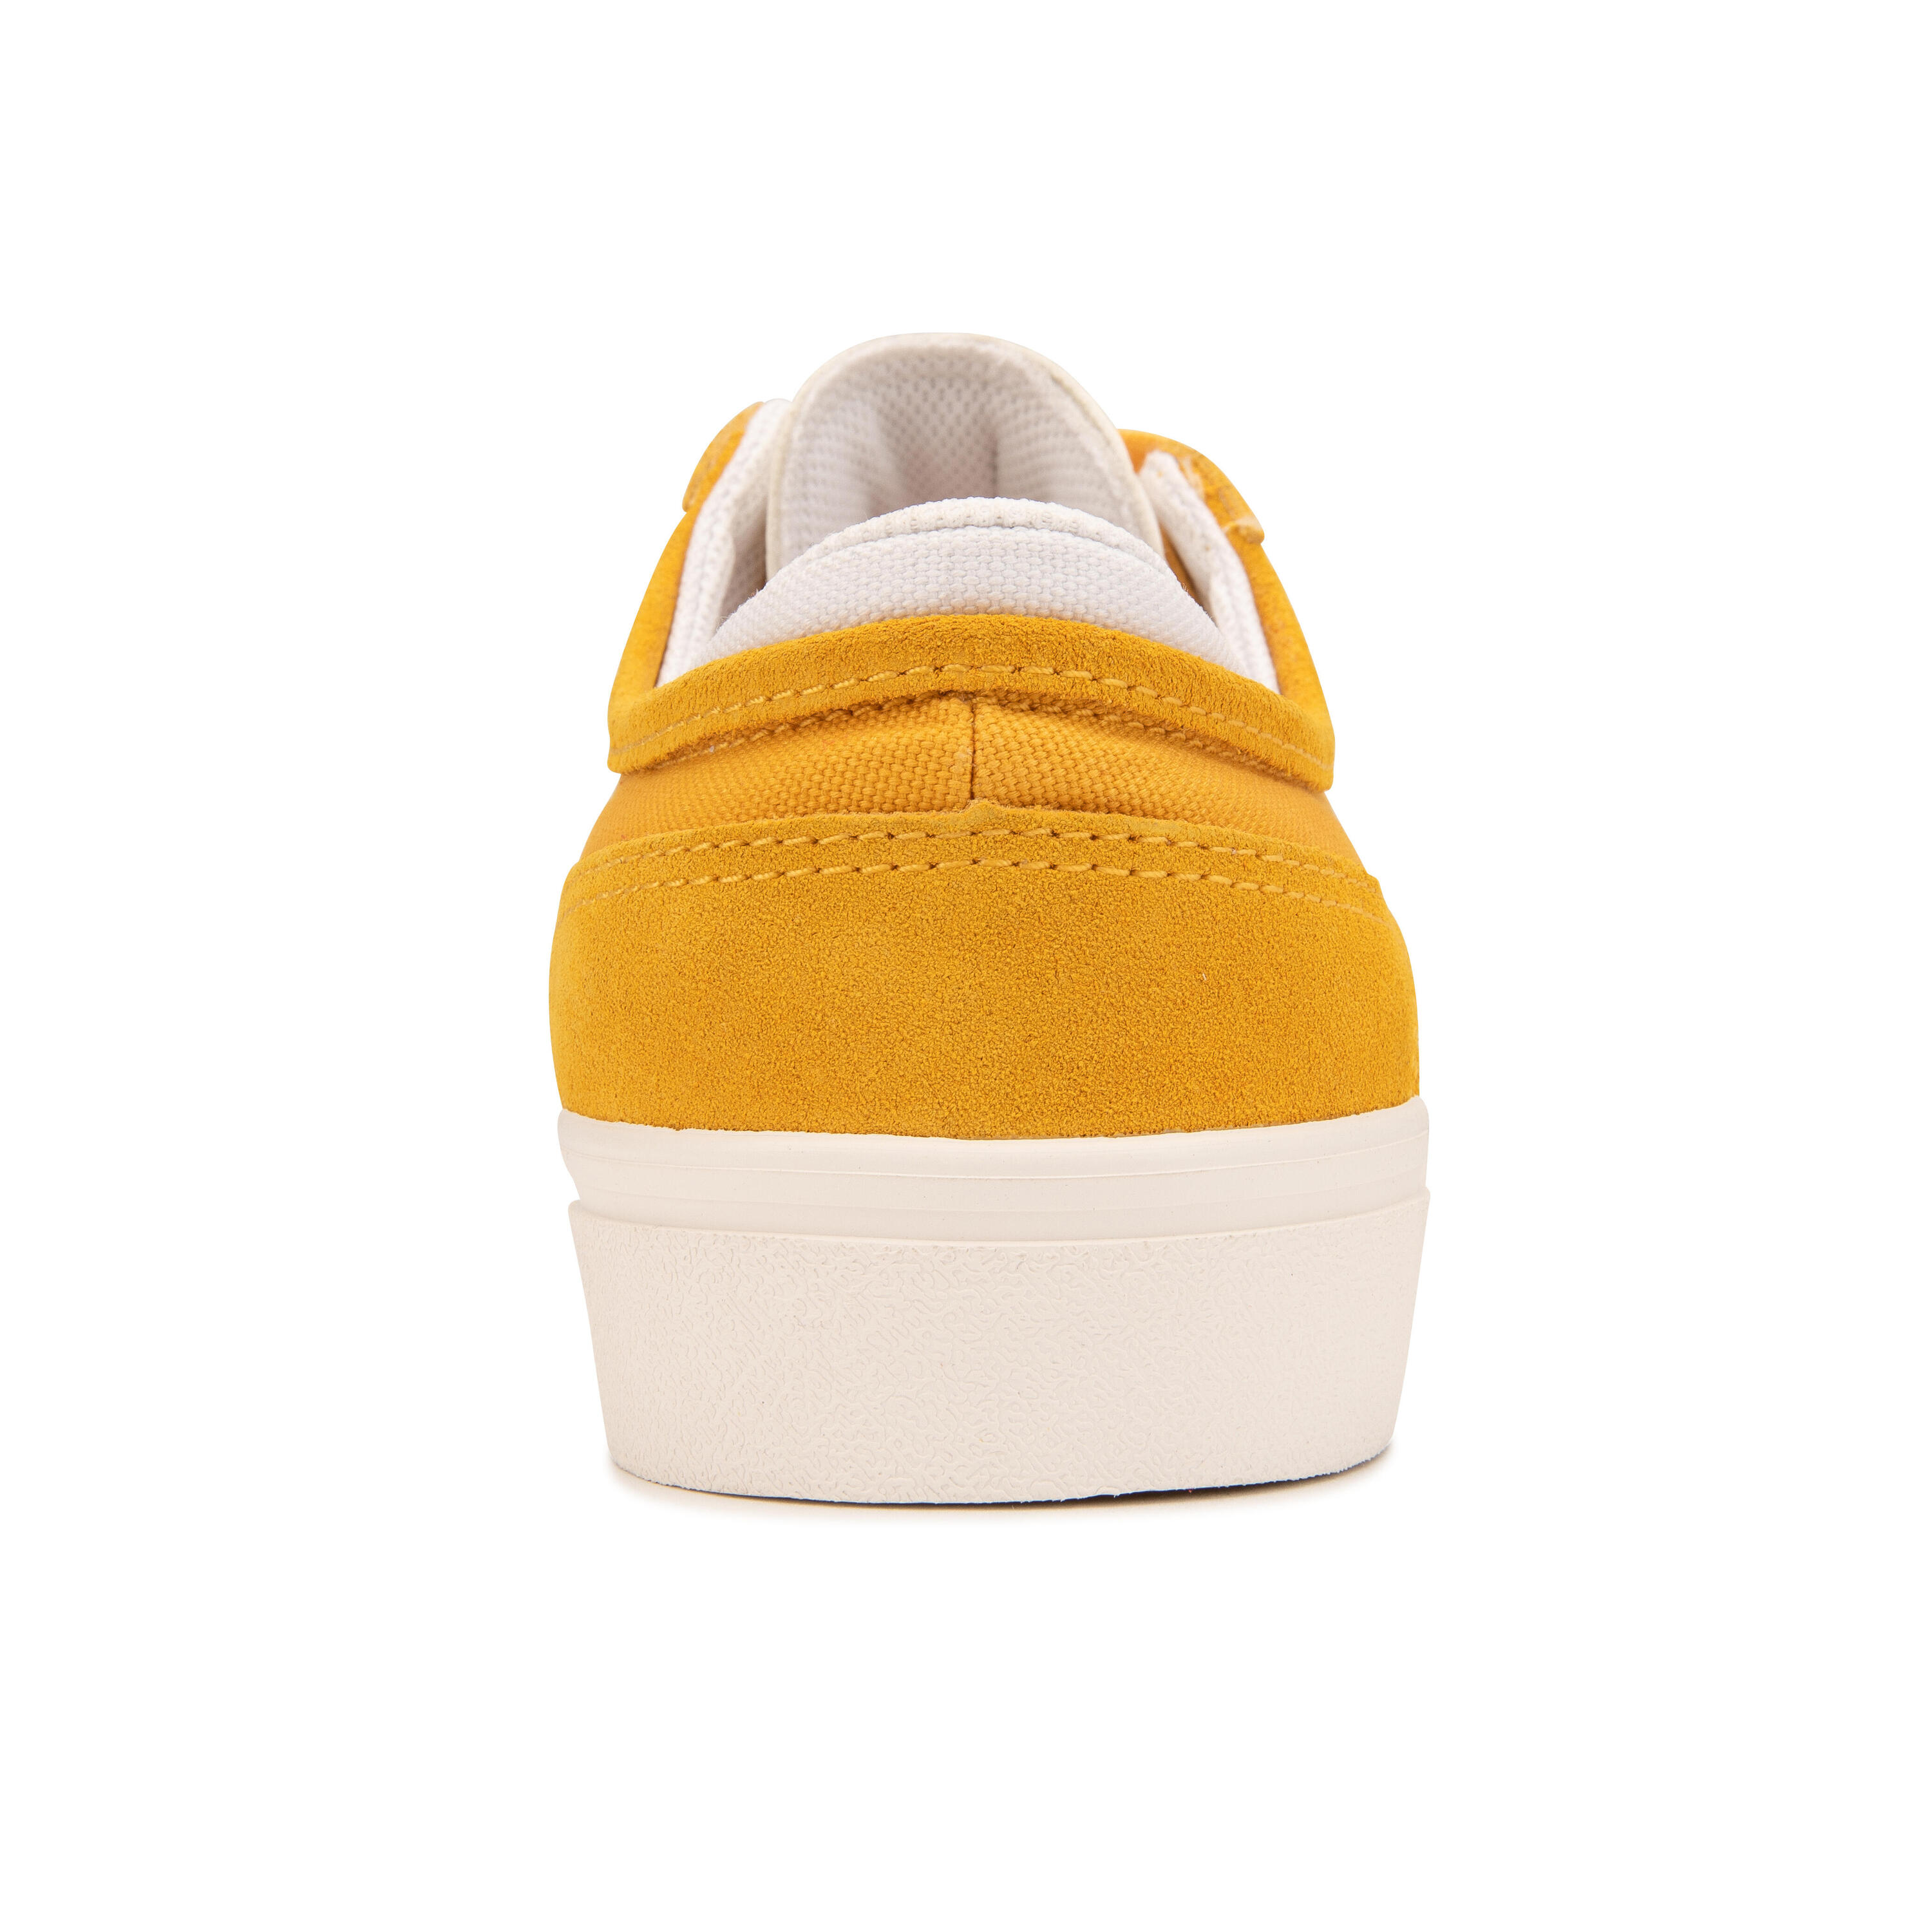 Adult Vulcanised Skate Shoes Vulca 500 II - Yellow/White 5/14